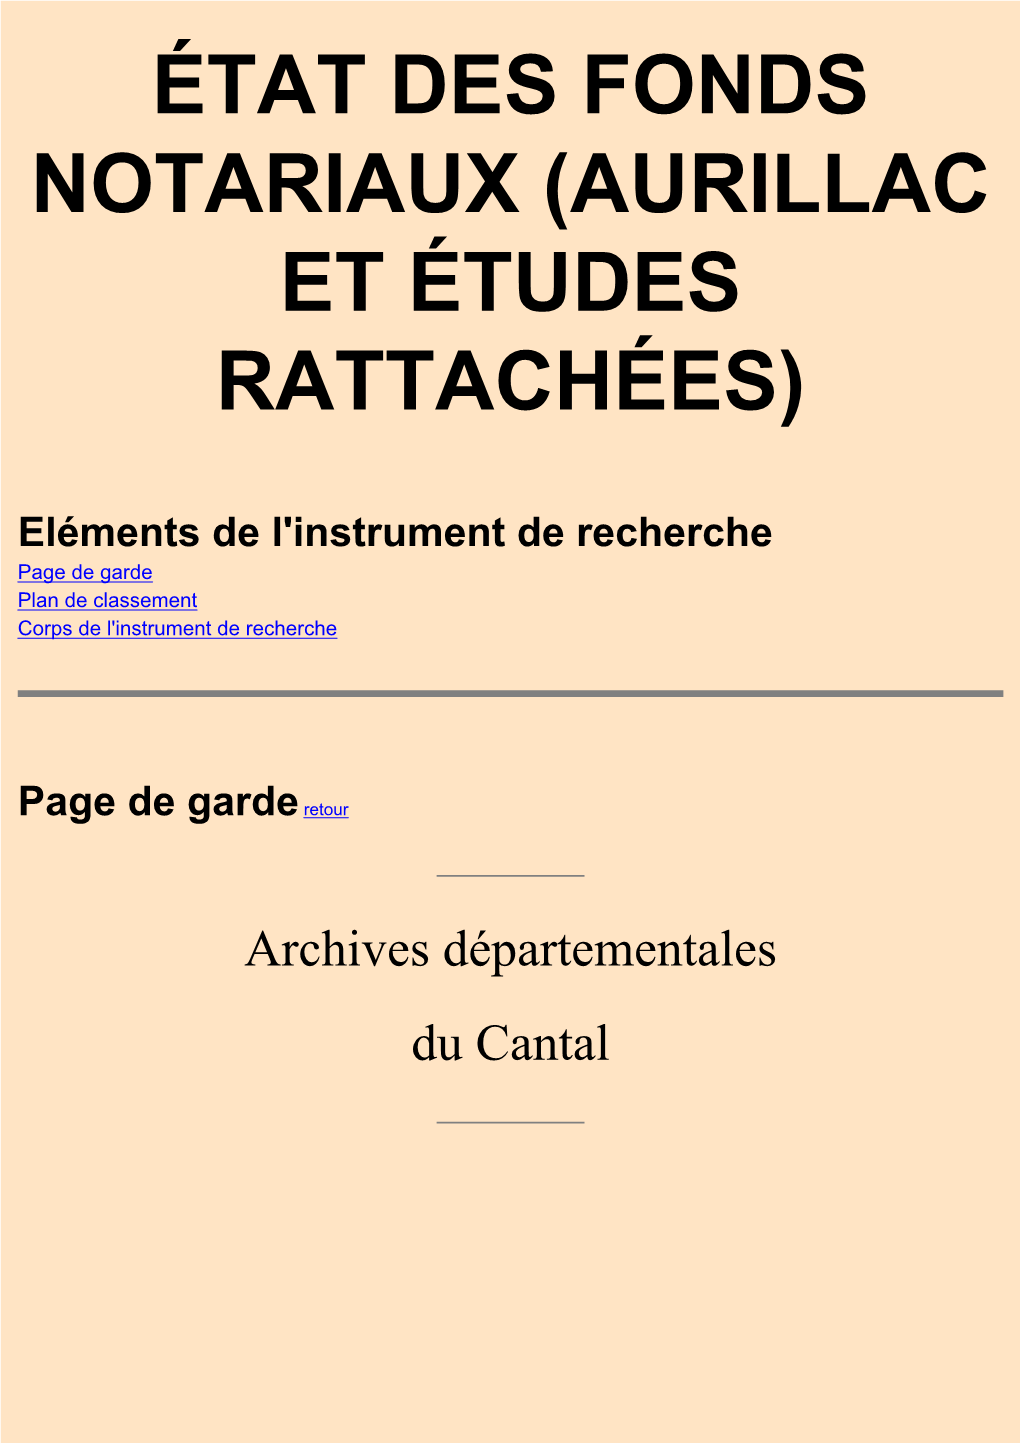 Aurillac Et Études Rattachées)